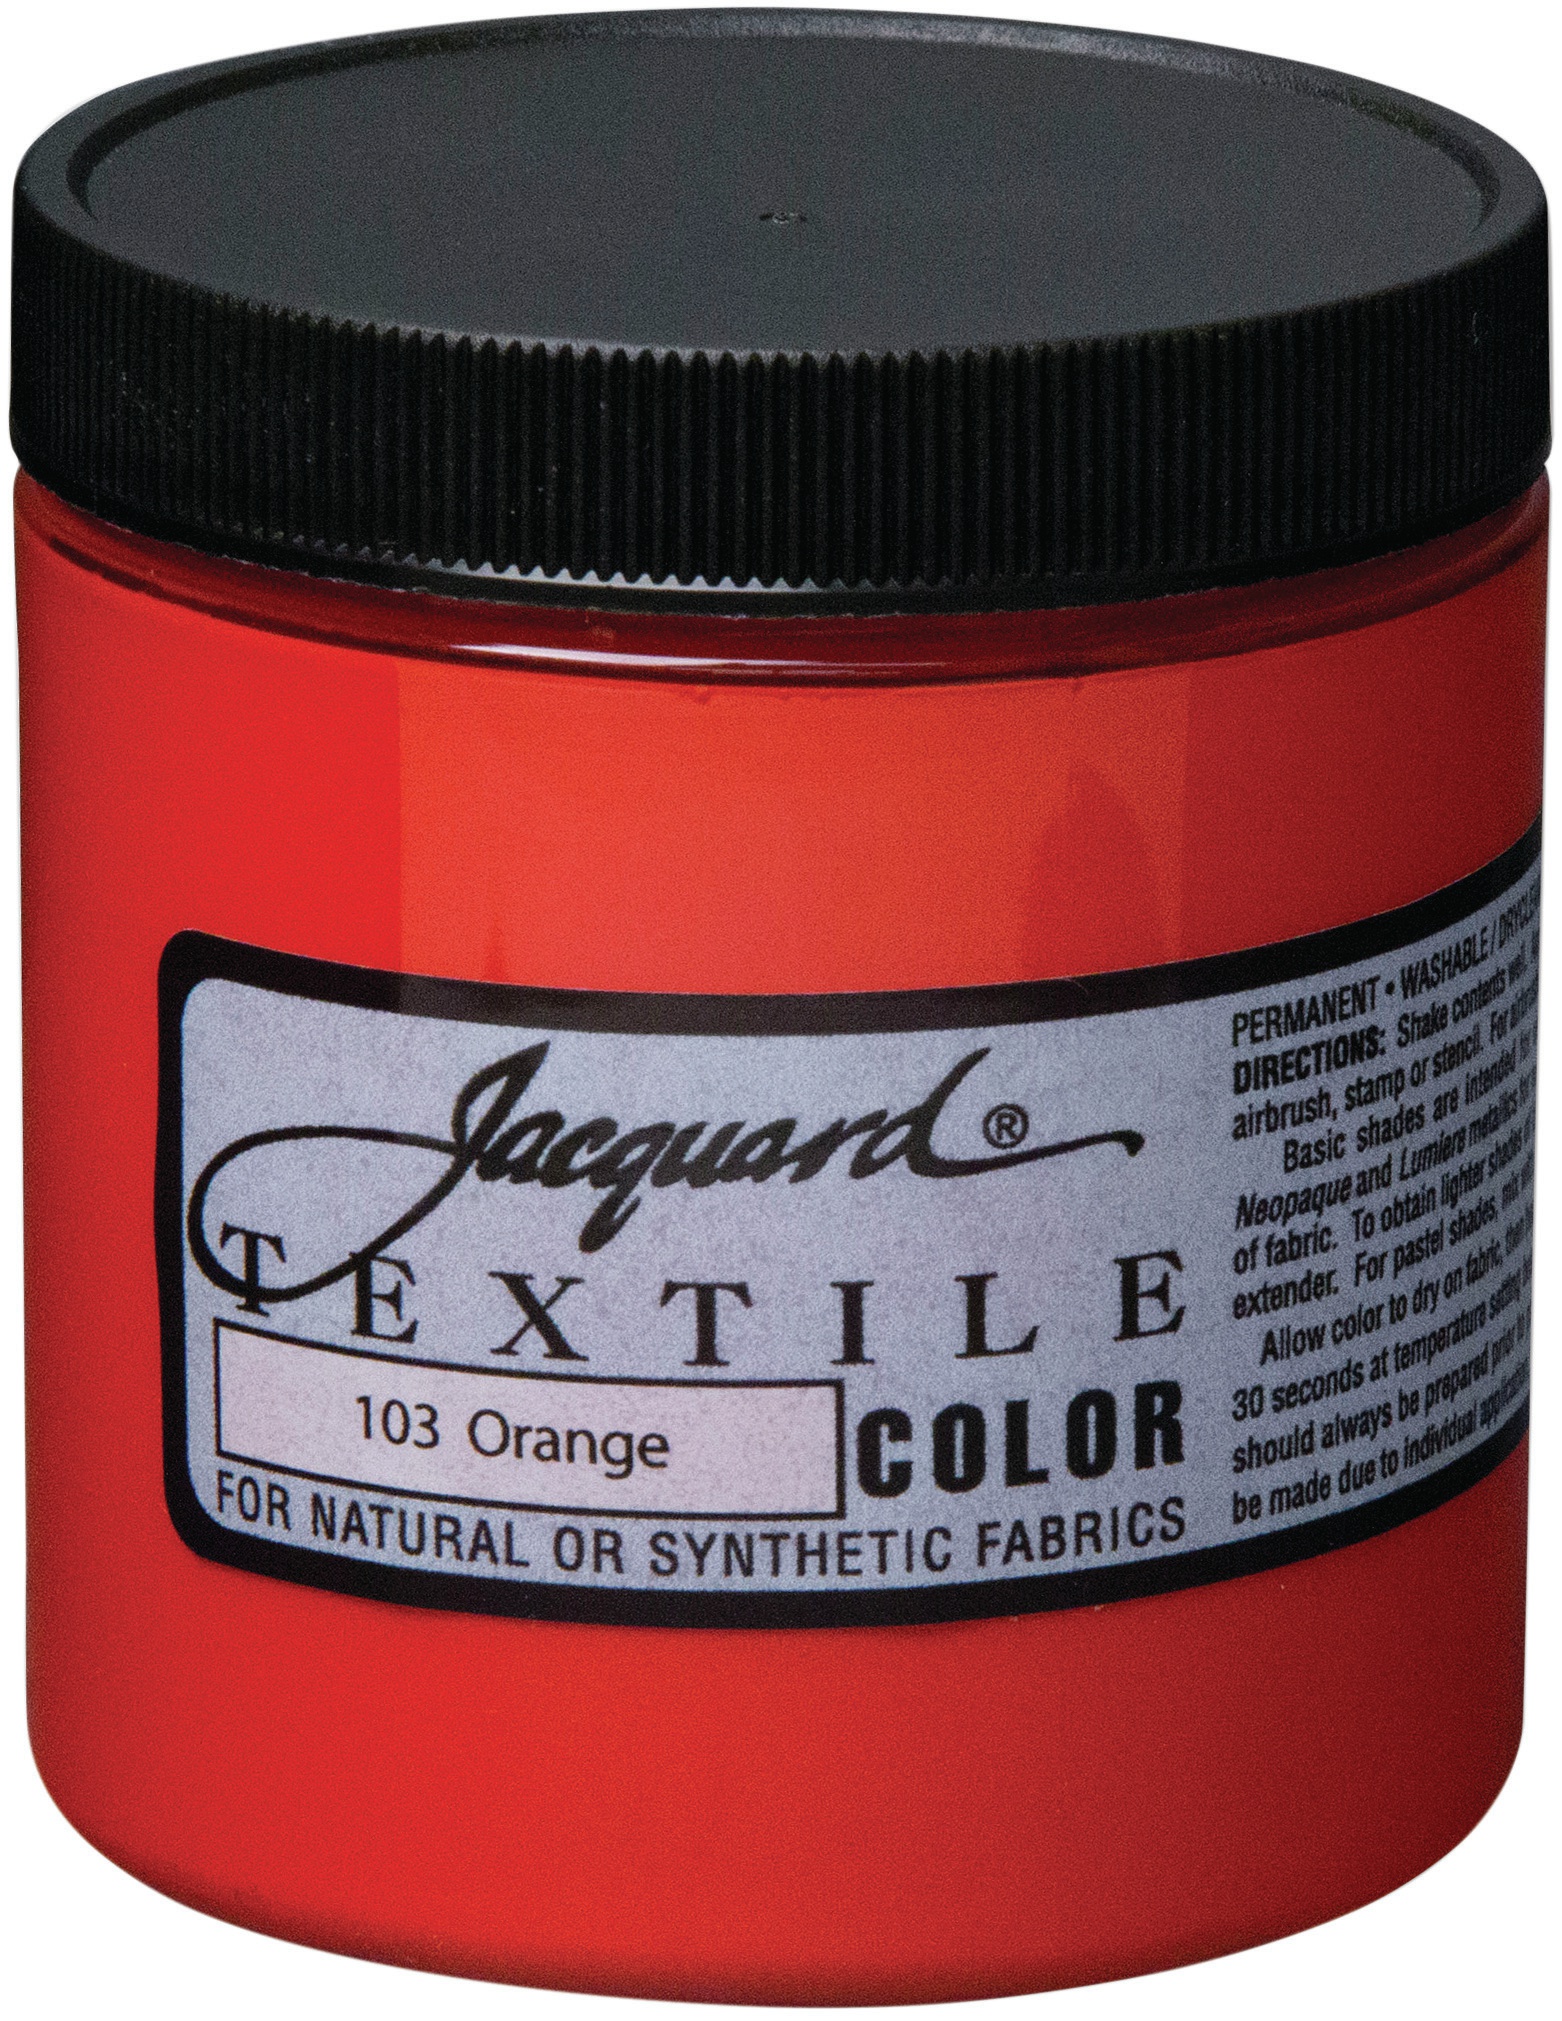 Jacquard Textile Color Fabric Paint 8oz-Orange 743772210306 | eBay